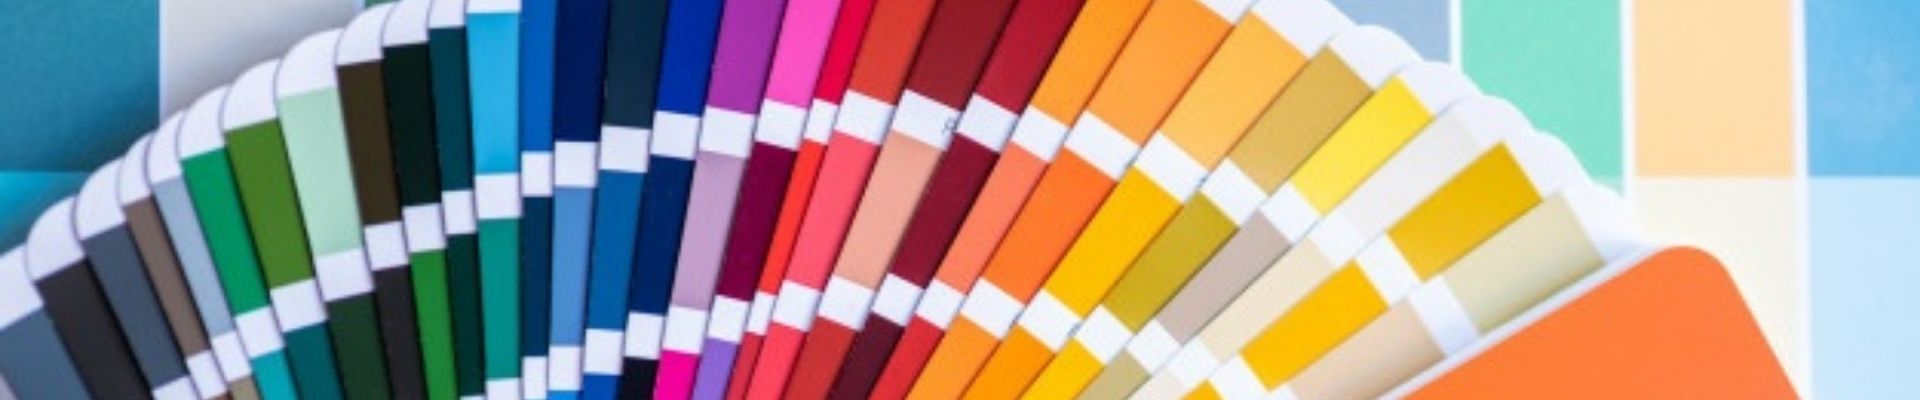 Você sabia que as cores são capazes de exercer influência sobre os consumidores?